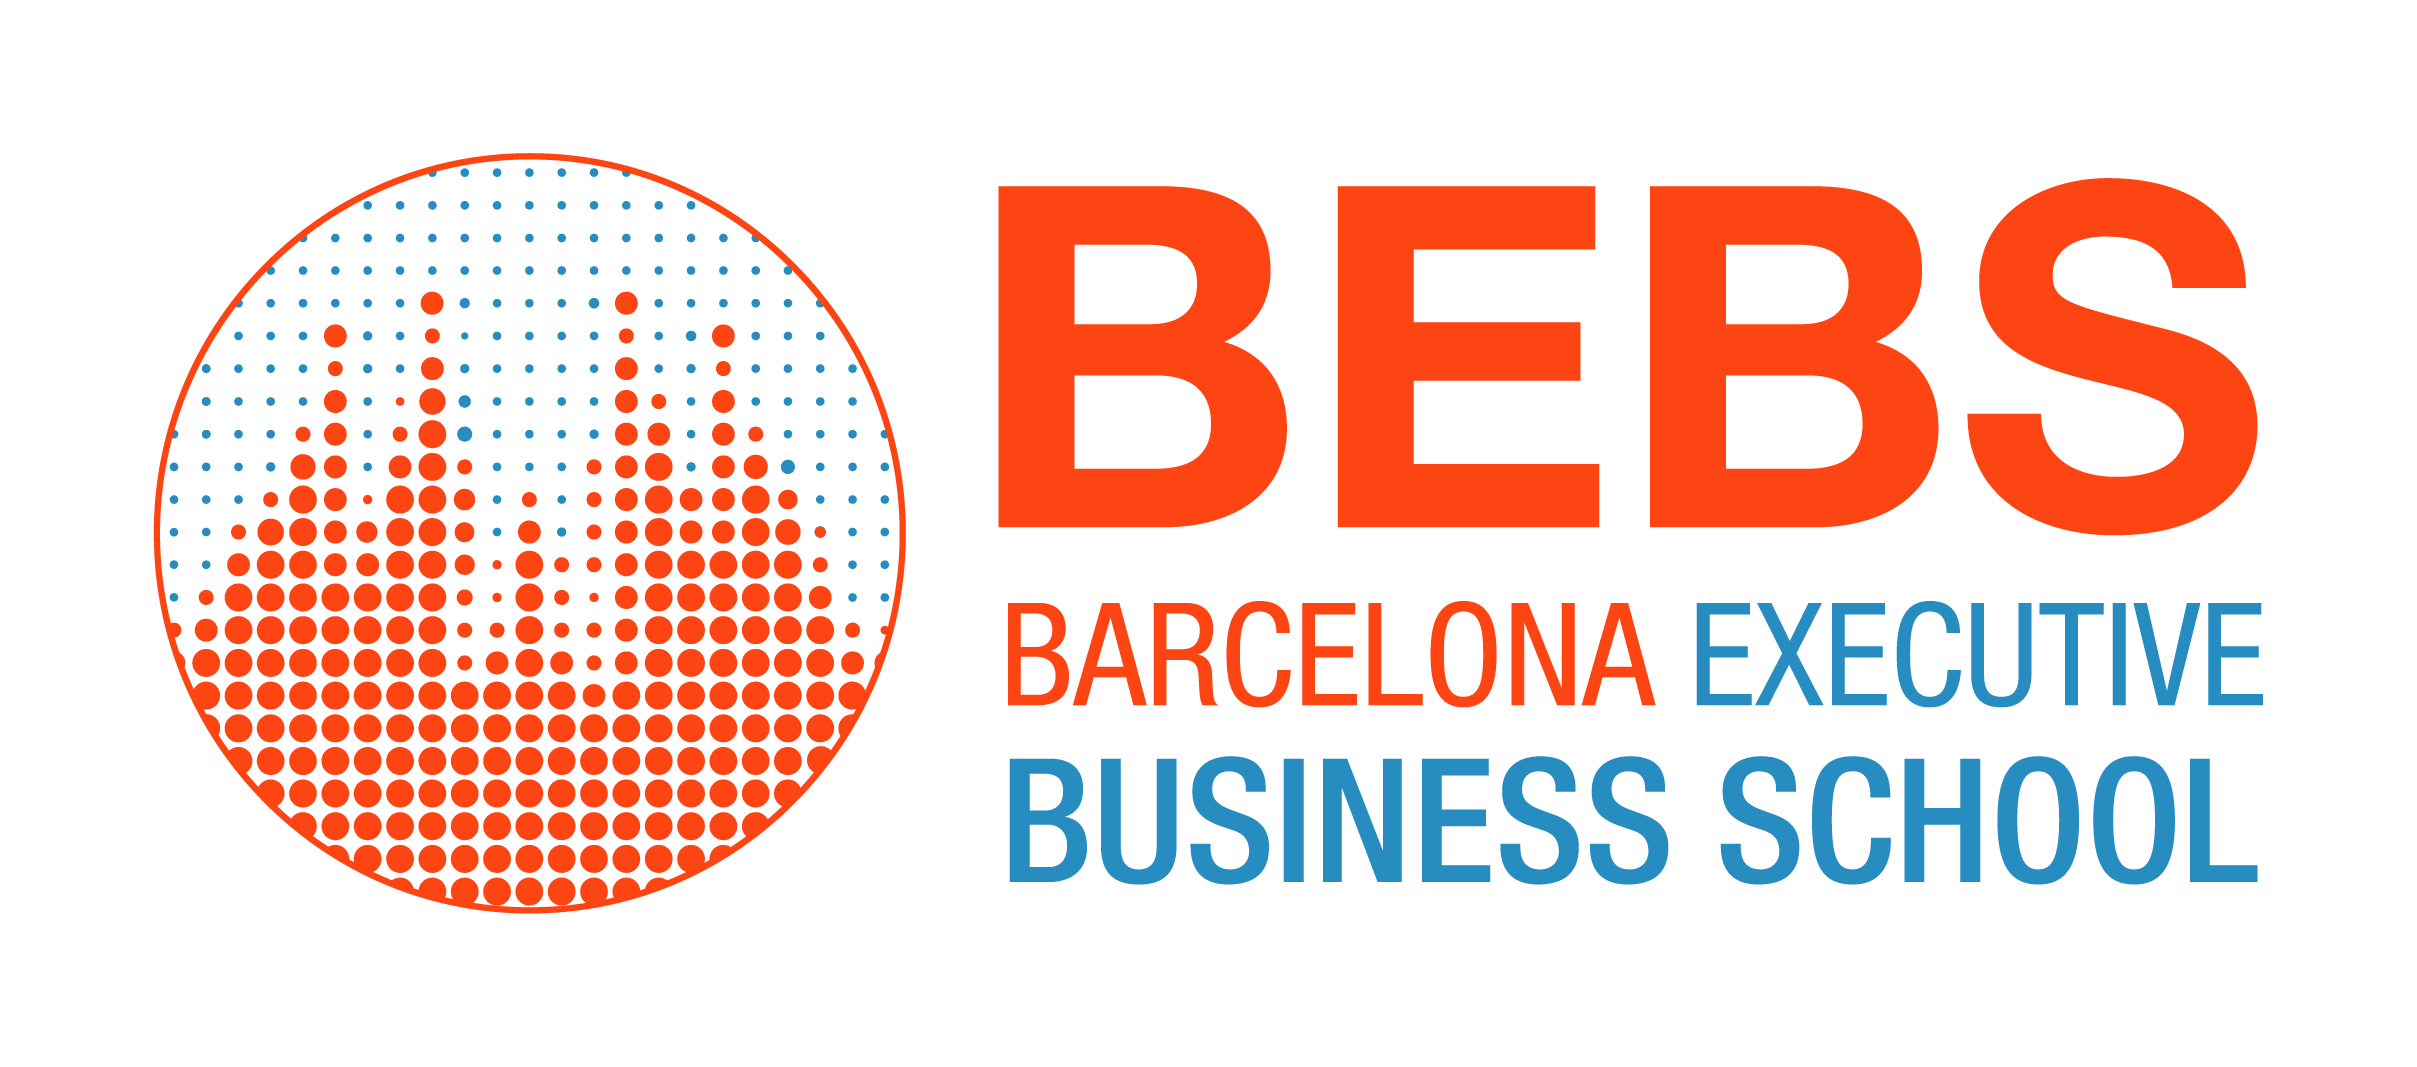 Bebs Barcelona Executive Business School. Barcelona Executive Business School Дата основания. Bebs. Логотип esei International Business School Barcelona. Беб интернет магазин